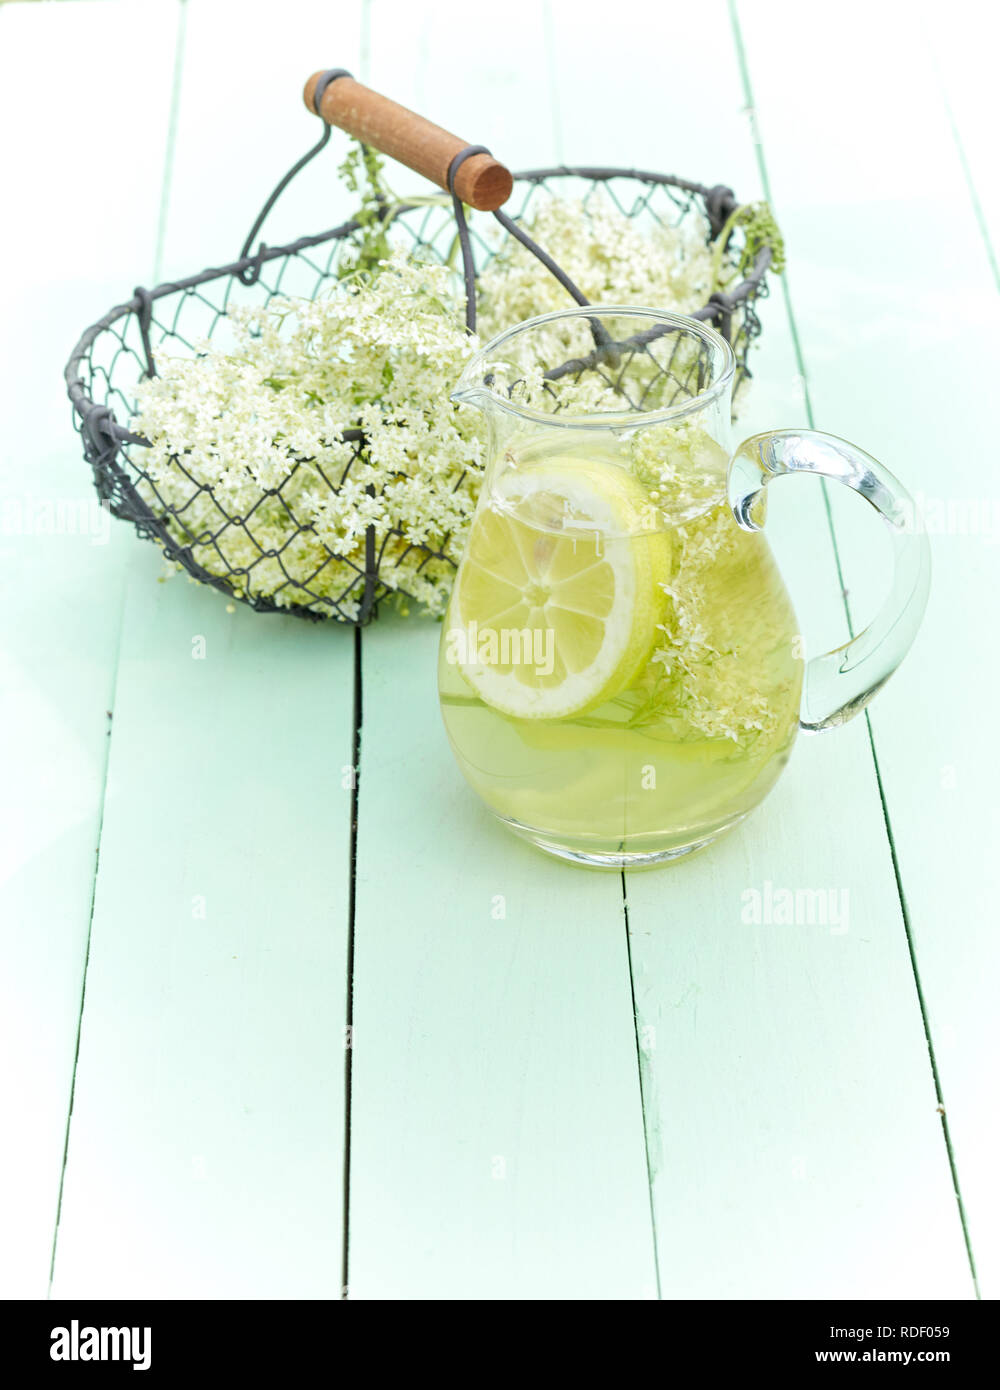 L'infusion aux herbes fraîches des elderflowers et citron dans un pot en verre à côté d'un panier de fleurs fraîchement cueillies sur le bois vert with copy space Banque D'Images